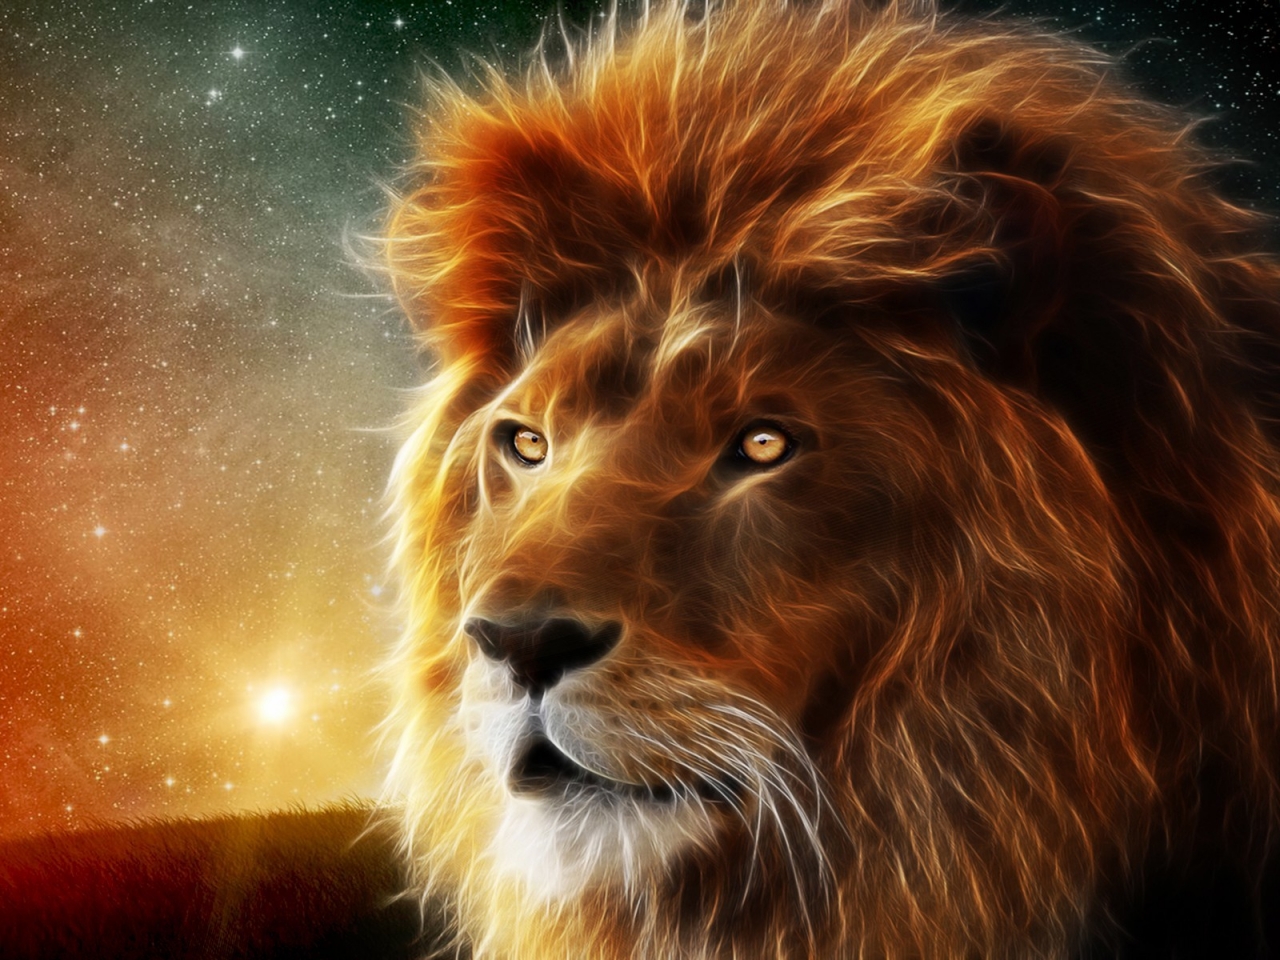 Lion Portrait for 1280 x 960 resolution